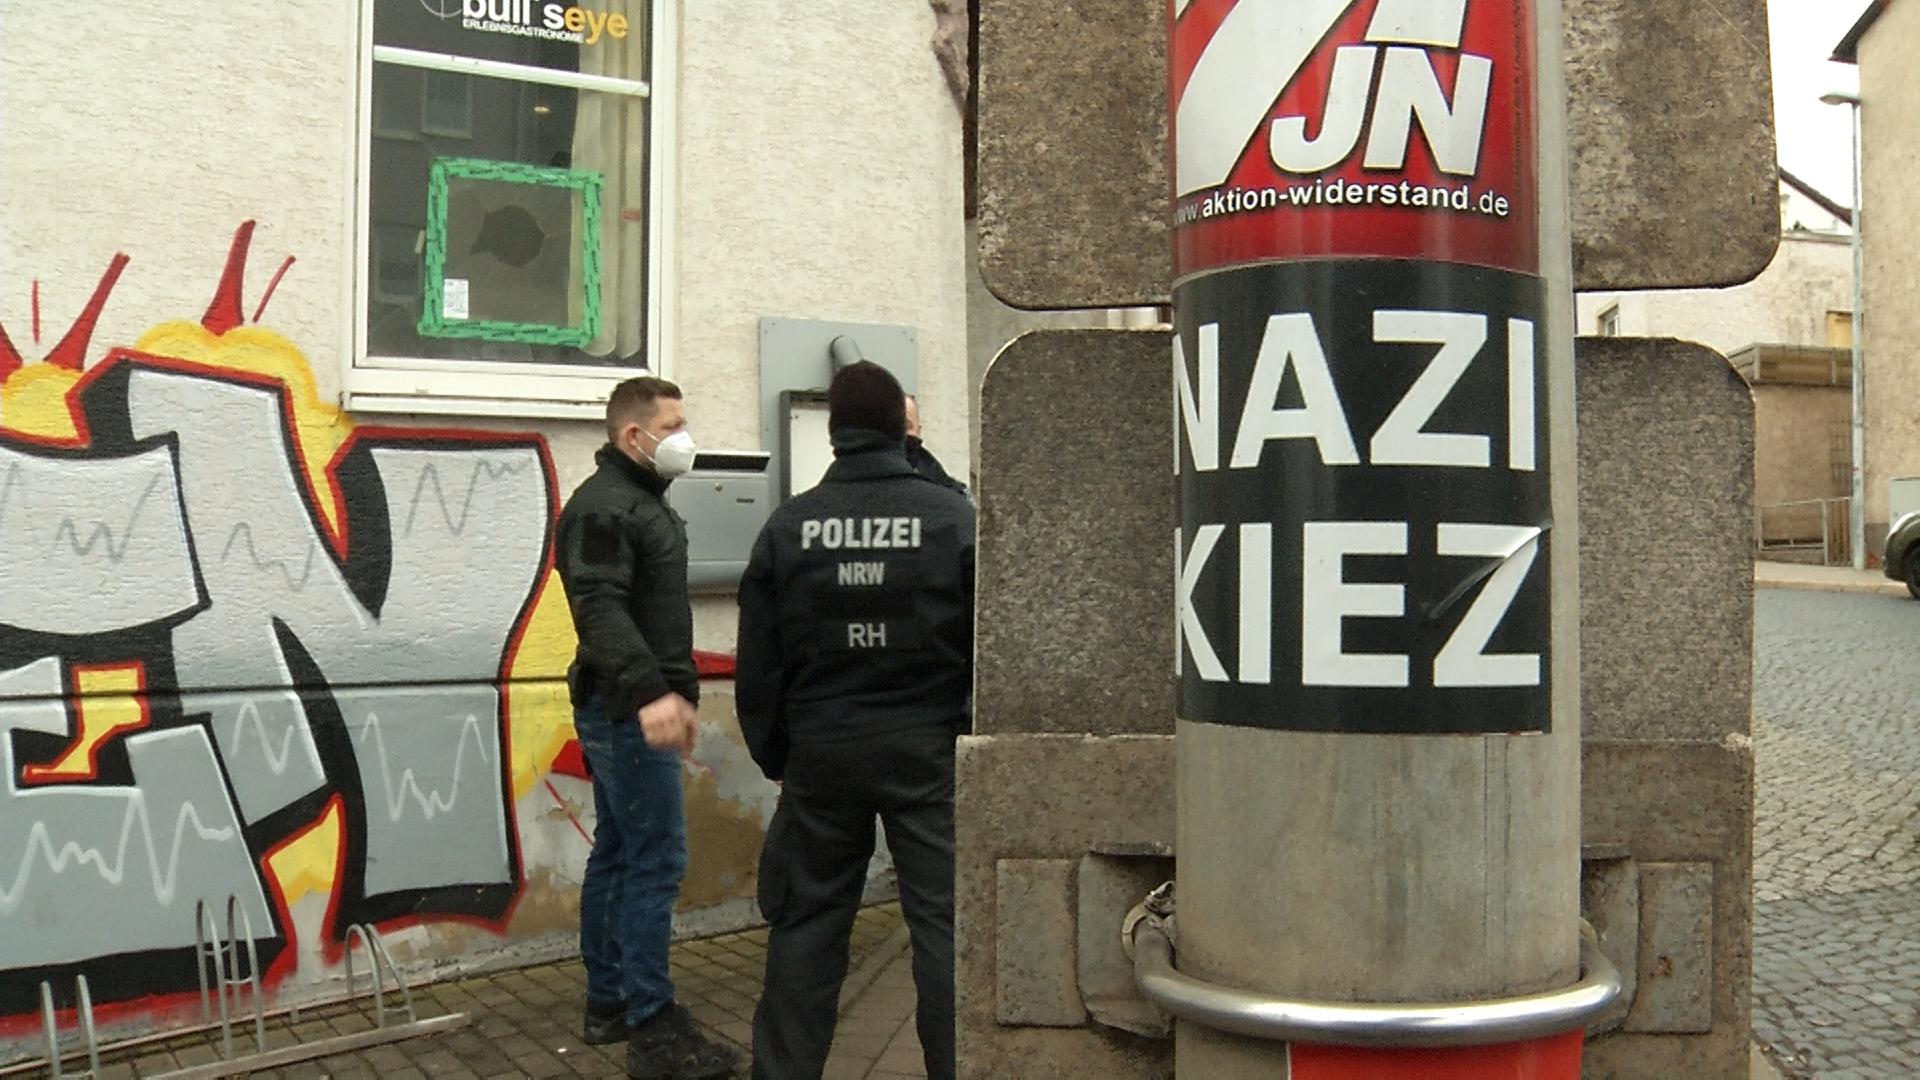 Polizisten stehen vor einer Gaststätte, an einem Pfahl ist ein Aufkleber mit der Aufschrift "Nazi Kiez" zu sehen.